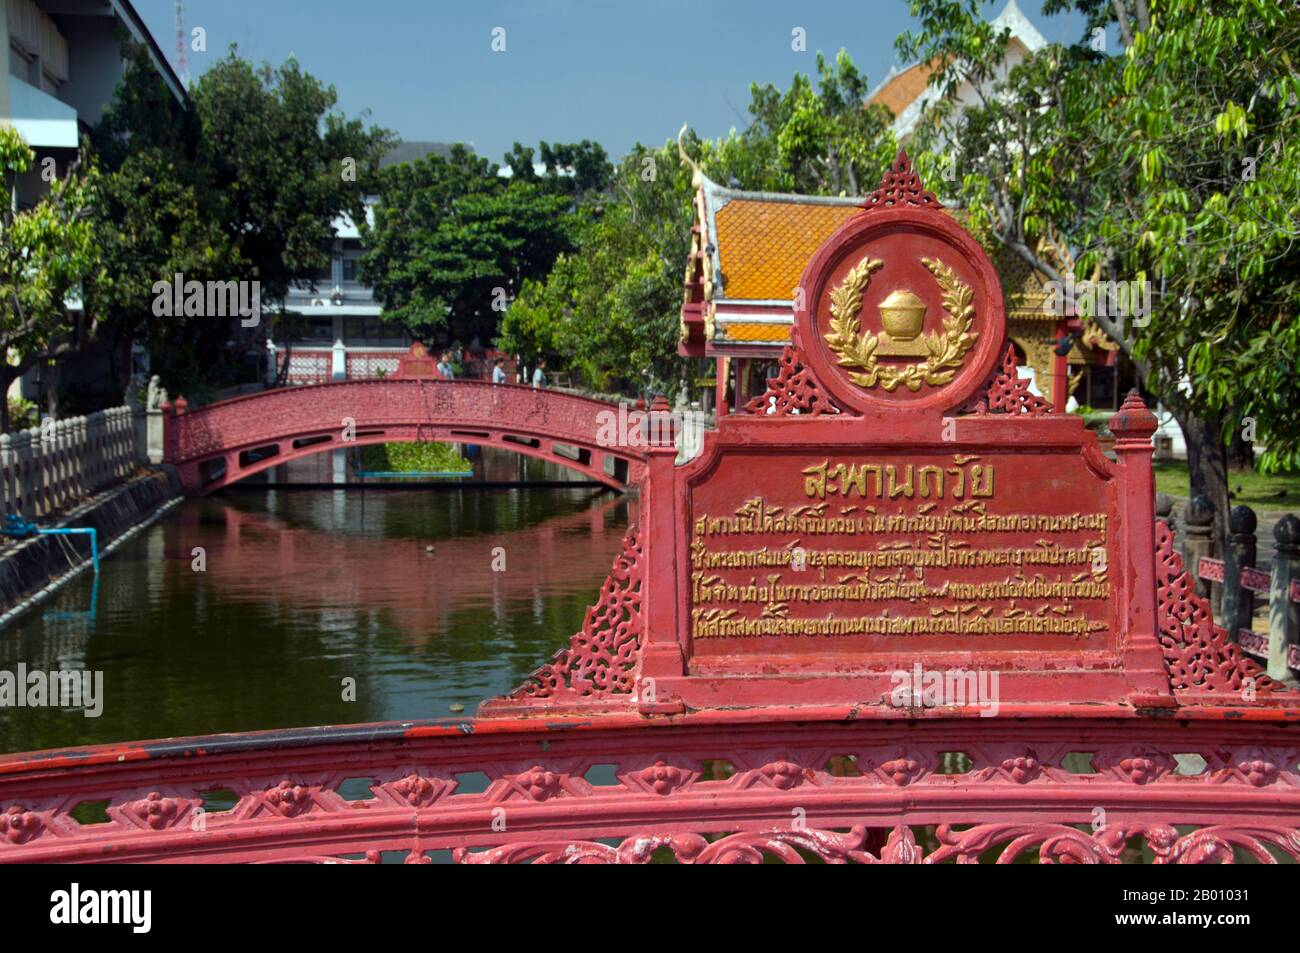 Thaïlande: Ponts de fer à Wat Benchamabophit, Bangkok. Le nom complet du temple est Wat Benchamabophit Dusitvanaram. Il est également connu sous le nom de temple de marbre. La construction du temple a commencé en 1899 à la demande du roi Chulalongkorn après la construction de son palais à proximité. Le nom du temple signifie littéralement le temple du cinquième roi situé à proximité du palais Dusit. Il a été conçu par le prince Naris, demi-frère du roi, et est construit en marbre italien. Banque D'Images